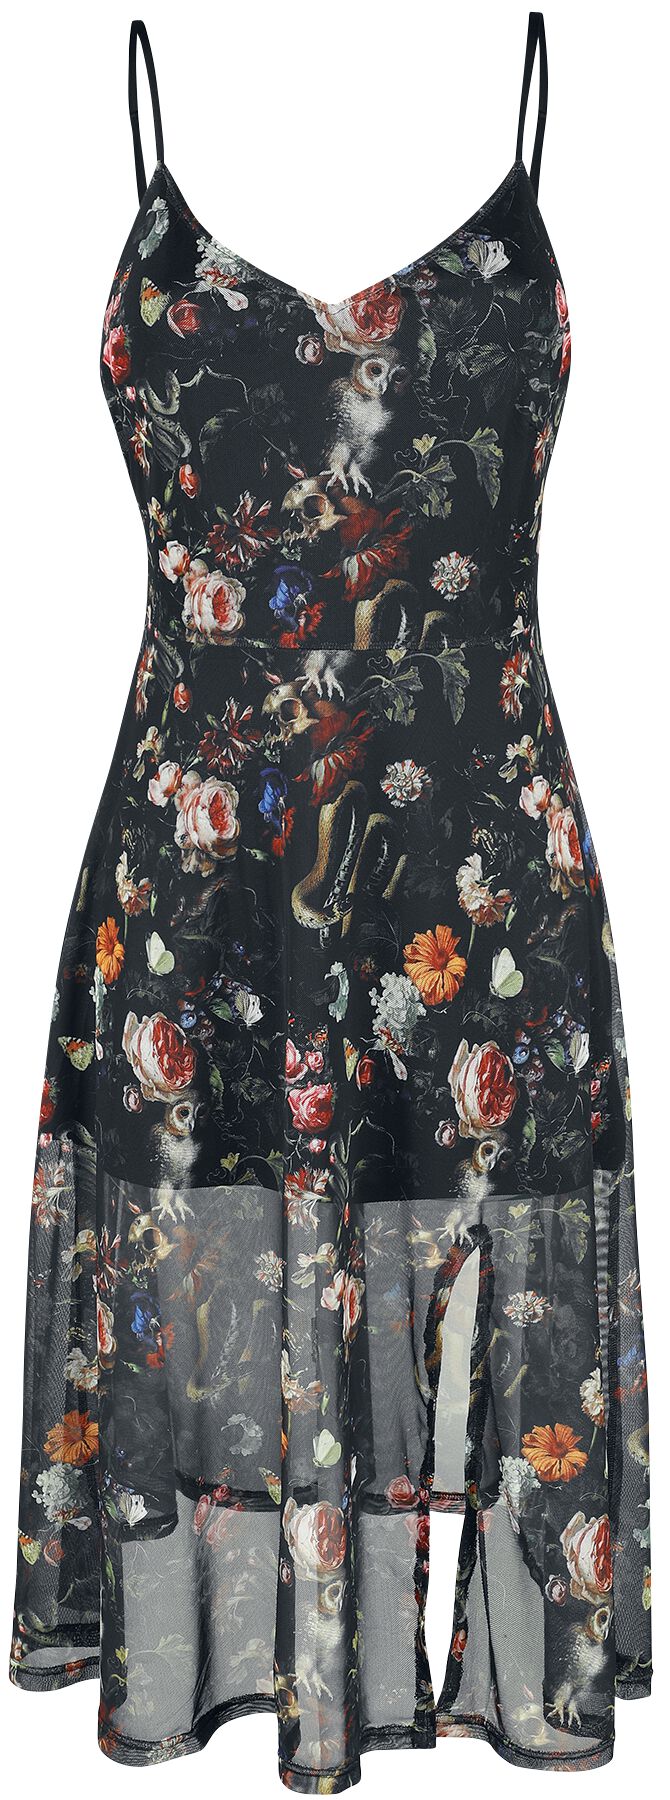 Jawbreaker - Gothic Kleid knielang - Night Garden Print Midi Dress - XS bis 4XL - für Damen - Größe 4XL - multicolor